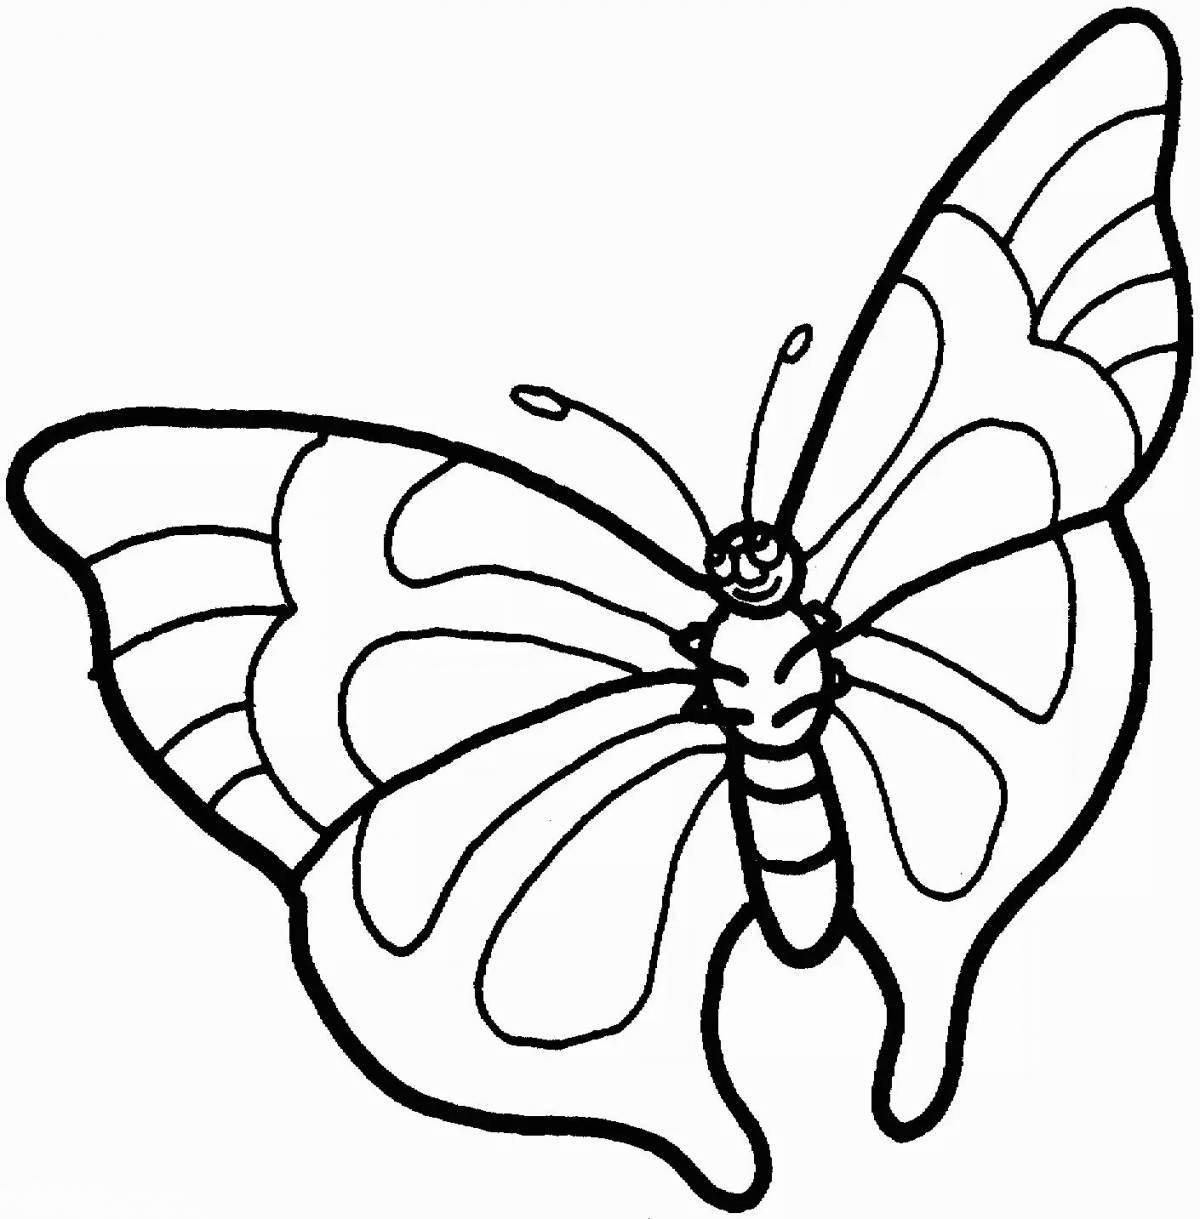 Трафаретная раскраска экзотической бабочки